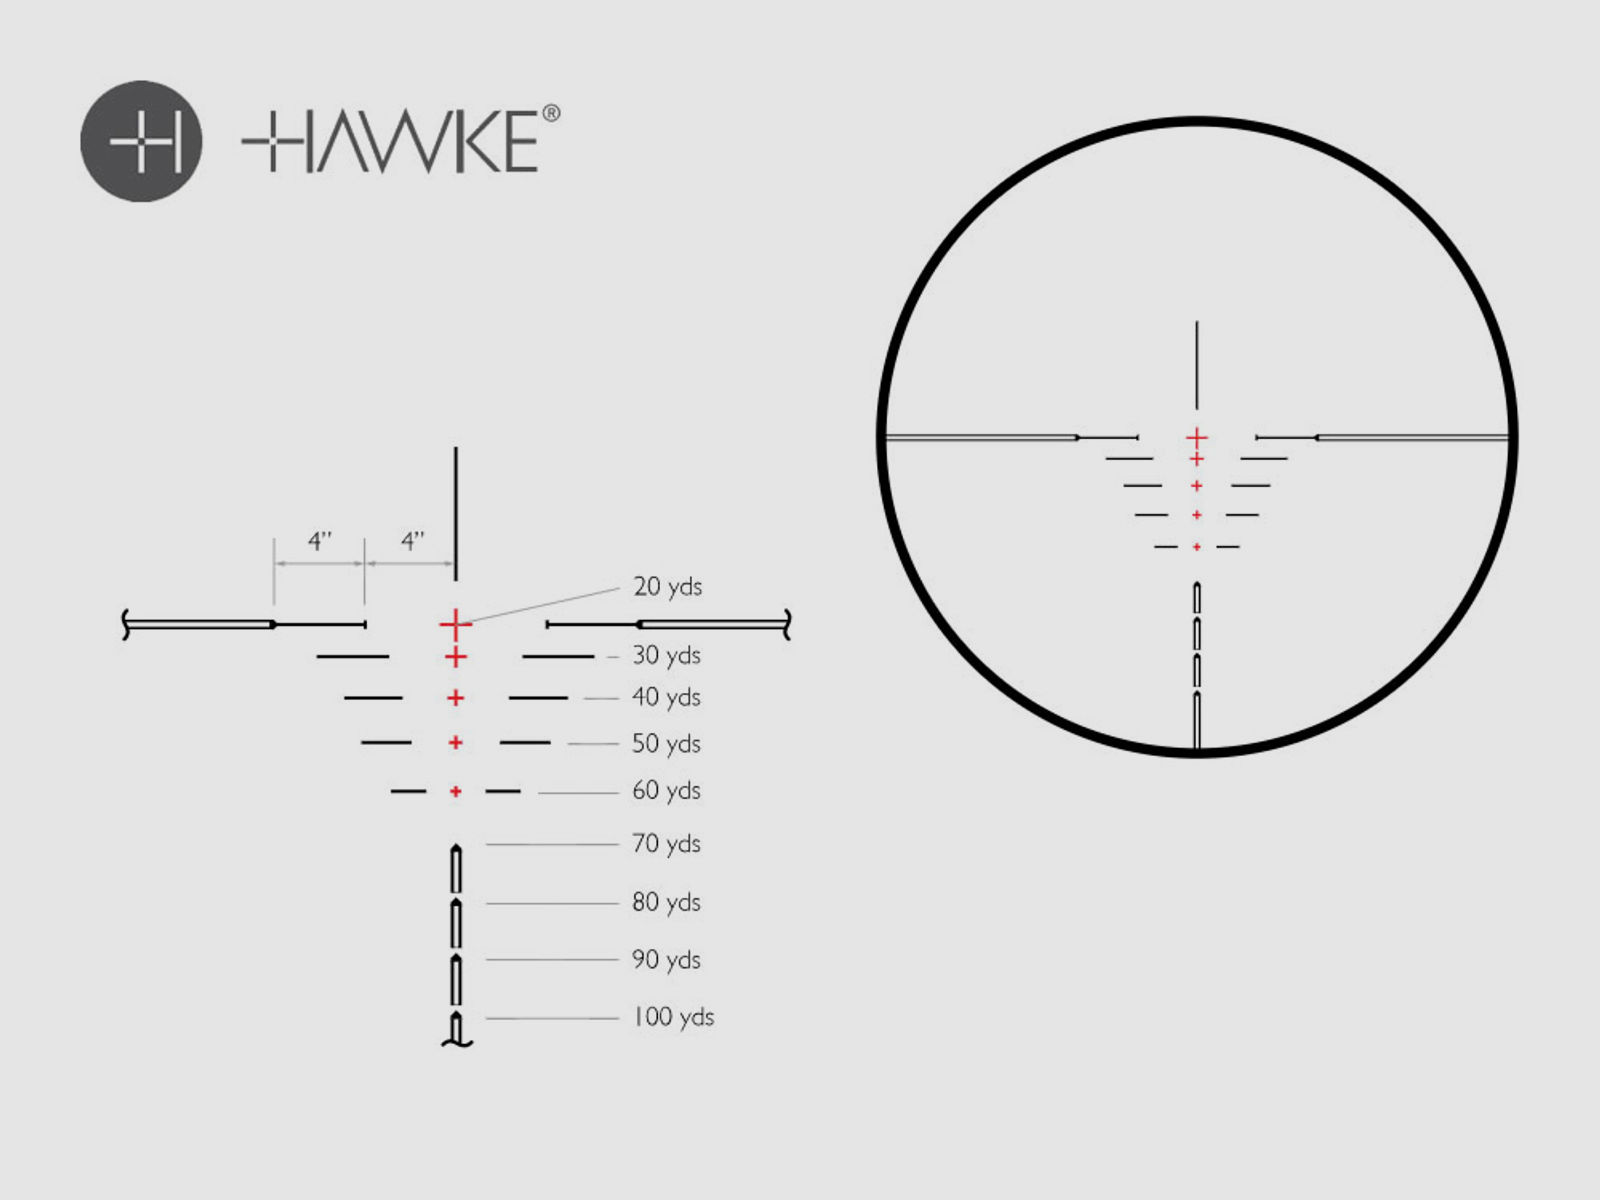 HAWKE Armbrust Zielfernrohr XB1 1.5-5x32, beleuchtetes SR Absehen